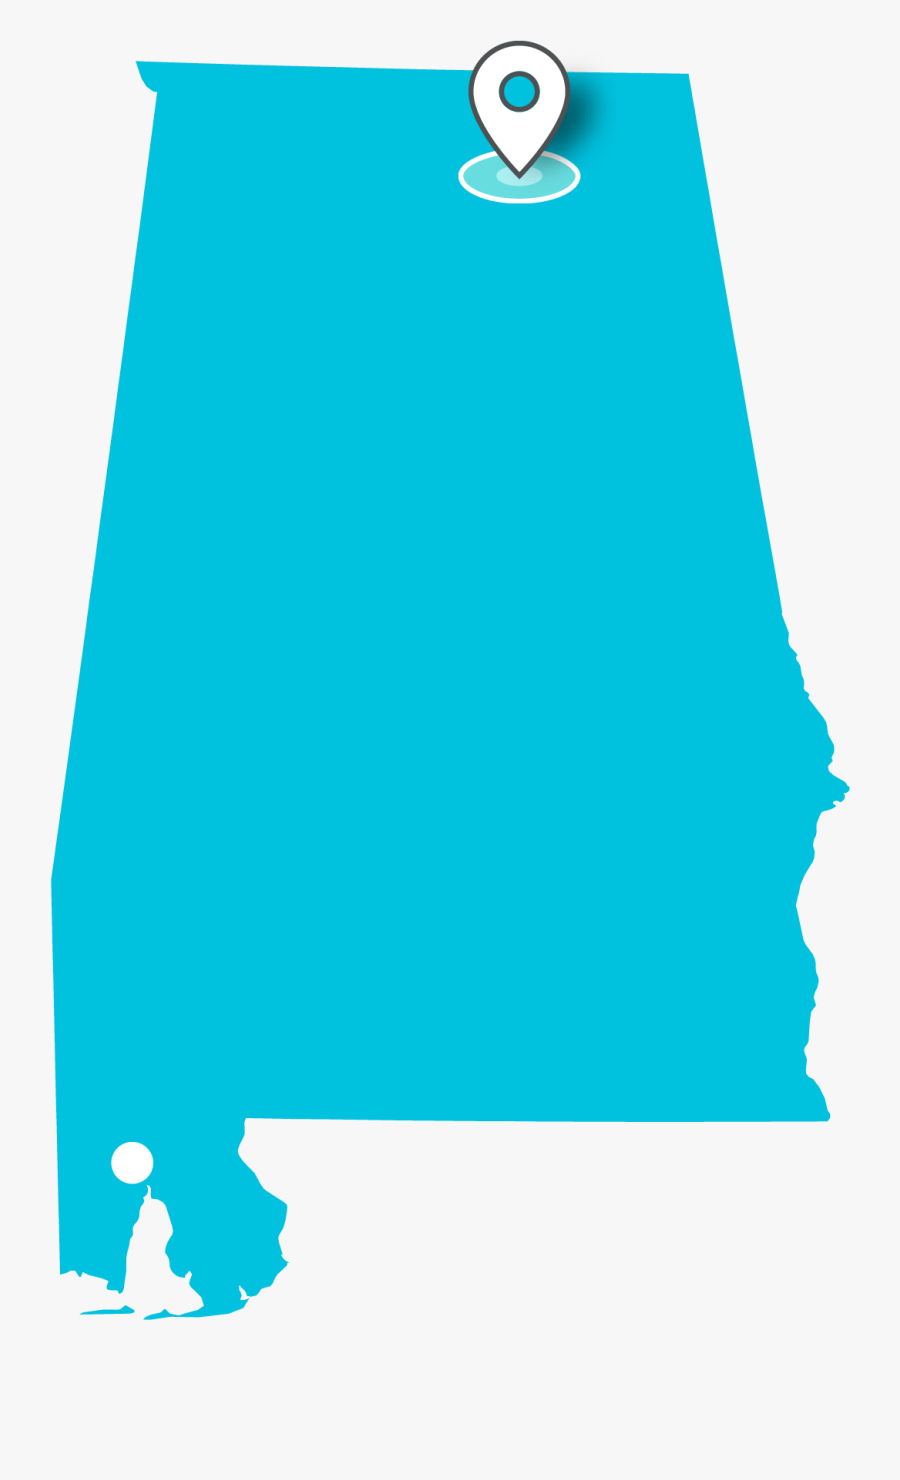 Alabama Clipart Cool - State Of Alabama Transparent, Transparent Clipart